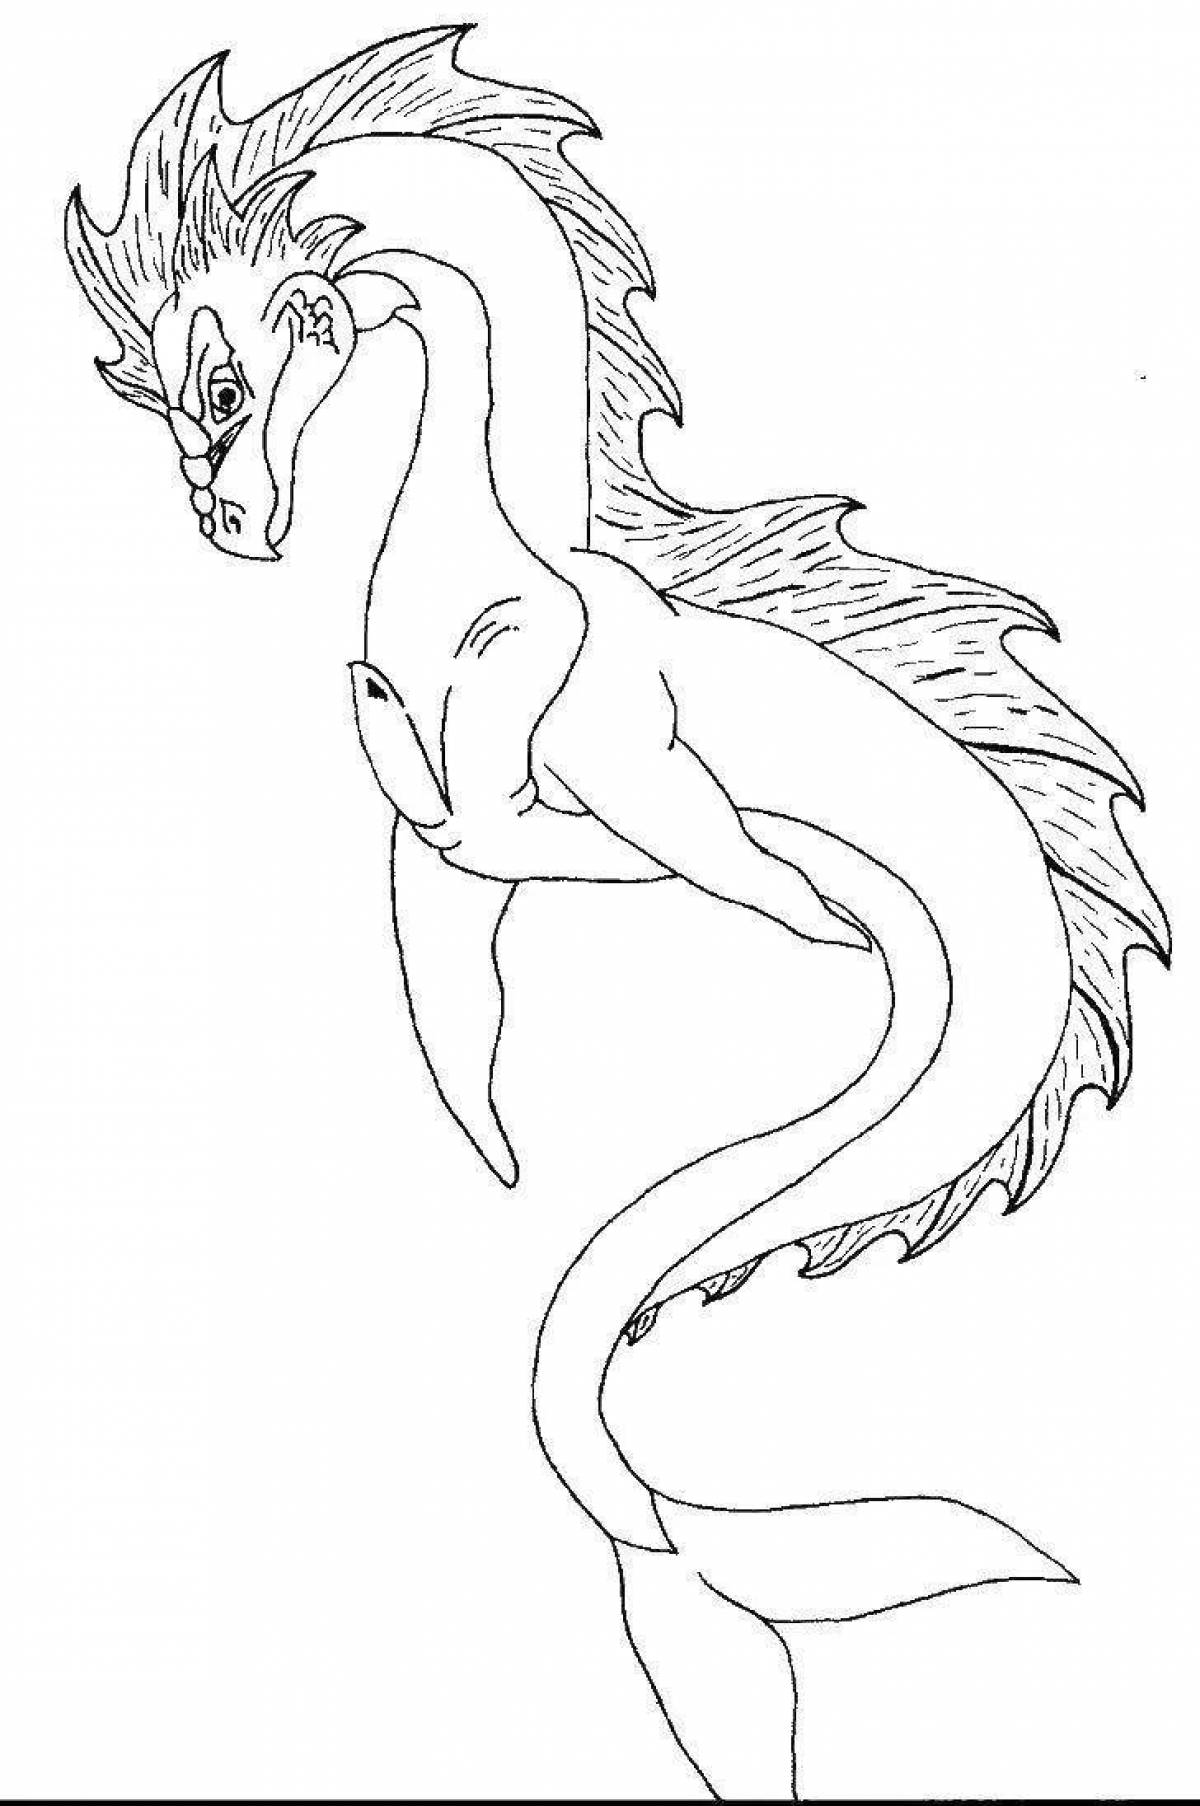 Раскраска элегантный водяной дракон